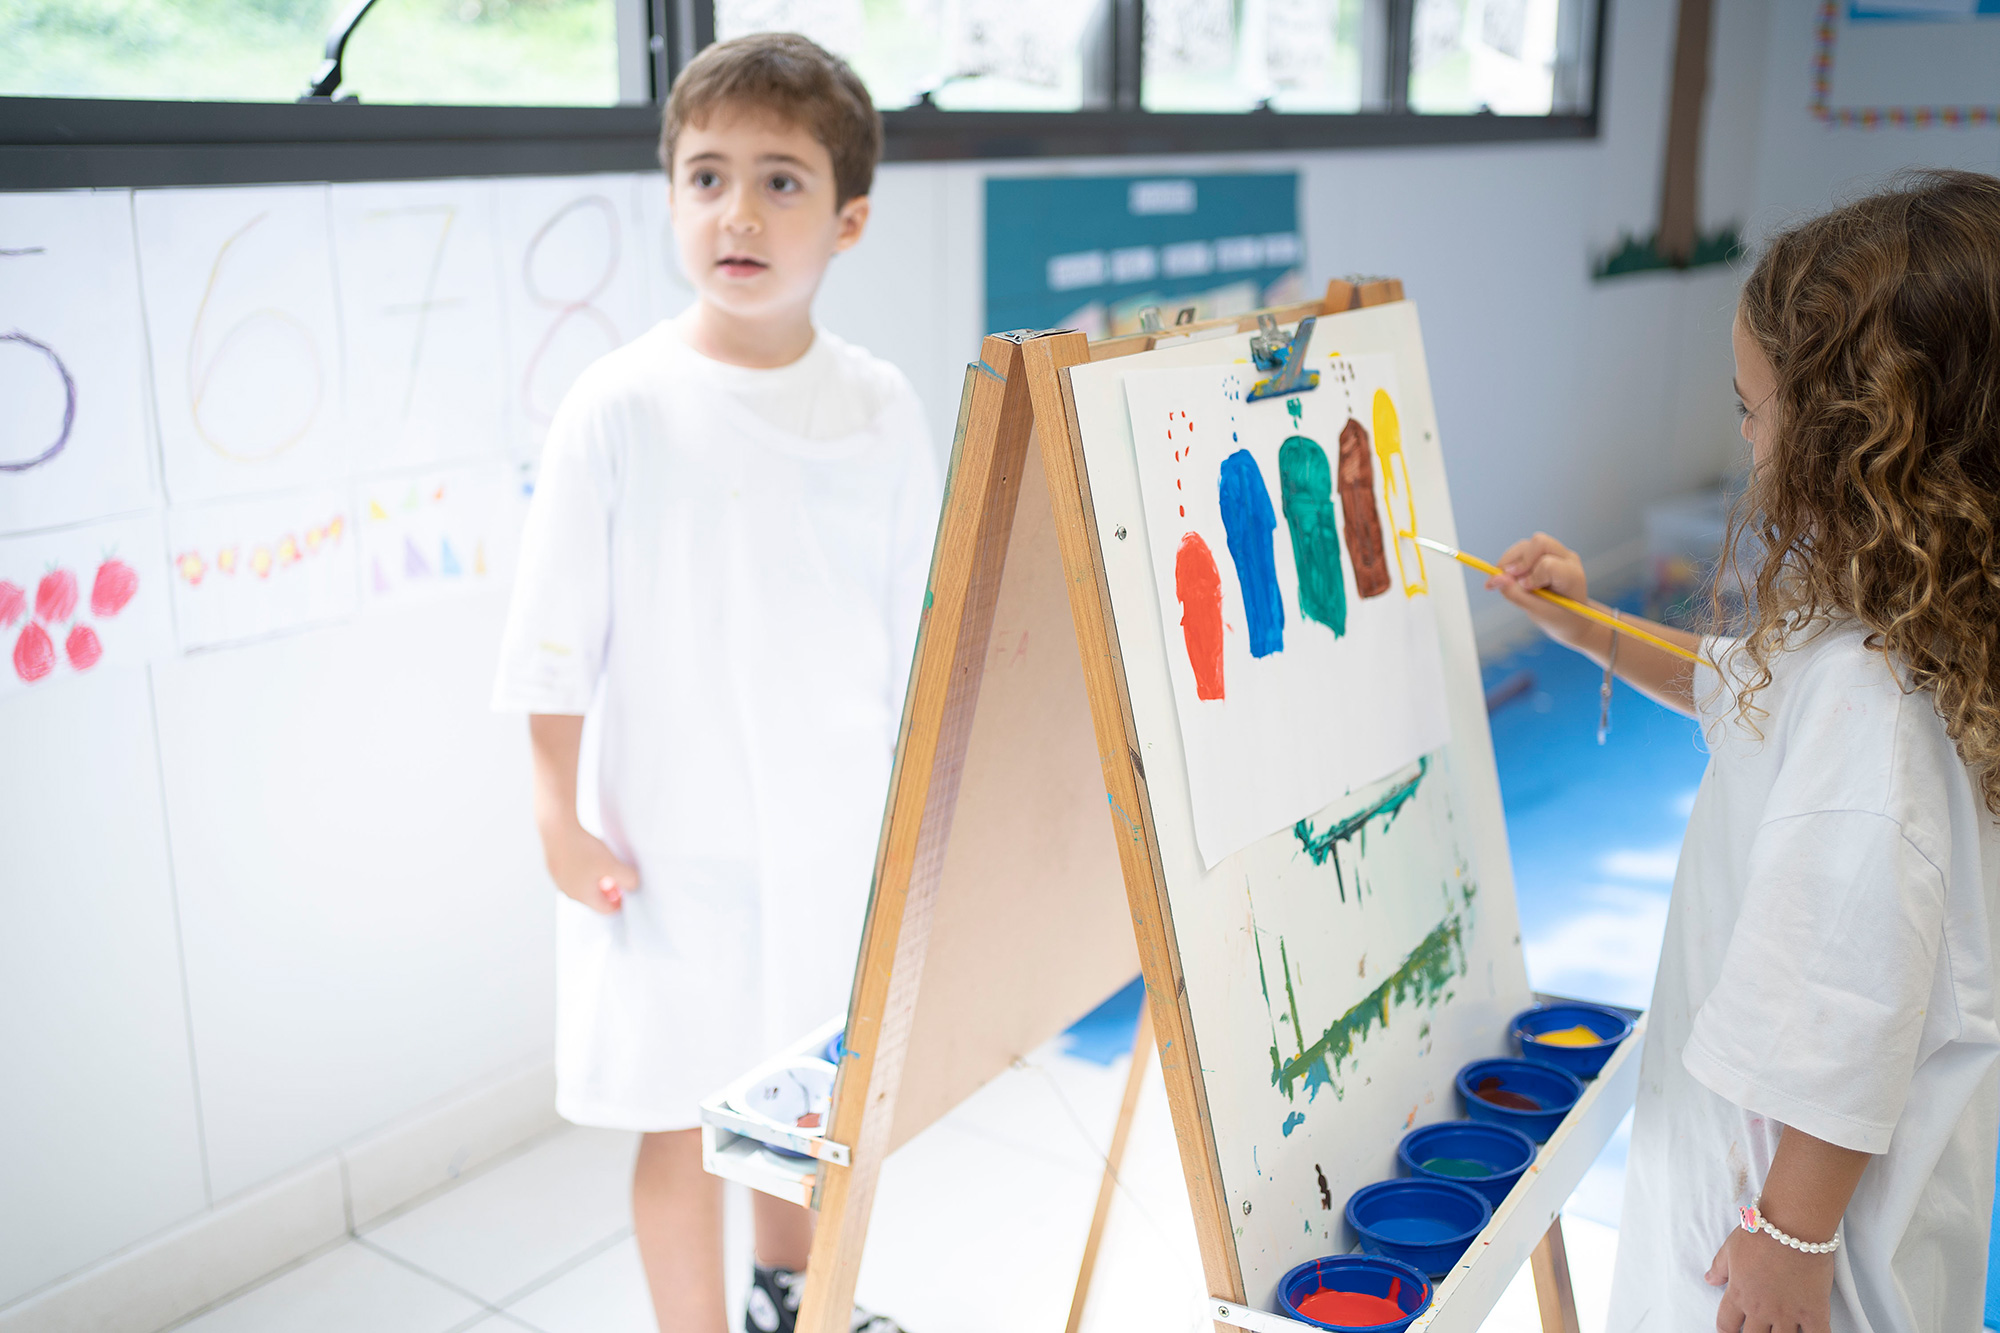 Ein Mädchen im Malkittel malt an einer Staffelei farbige Elemente mit einem Pinsel auf ein weisses Blatt Papier. 	